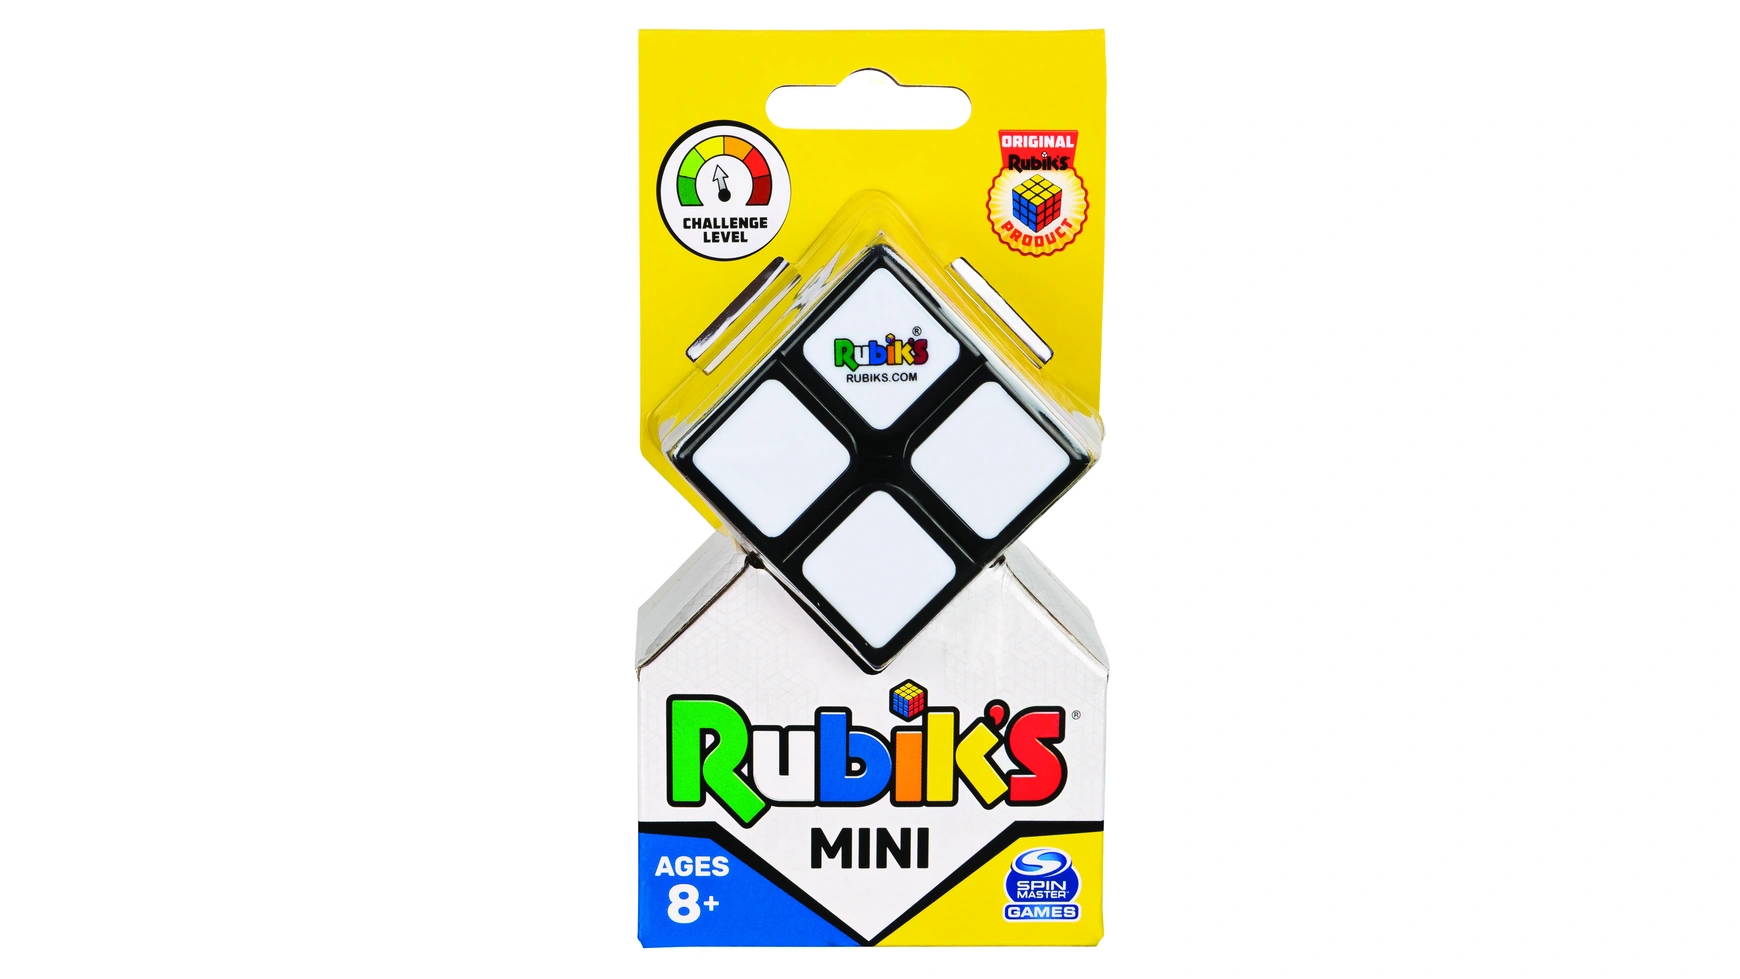 Rubik's Mini 2x2 Кубик Рубика кубик 2x2 для начинающих от 8 лет и для путешествий Spin Master кубик рубика qiyi axis профессиональный с матовой наклейкой 3x3x3